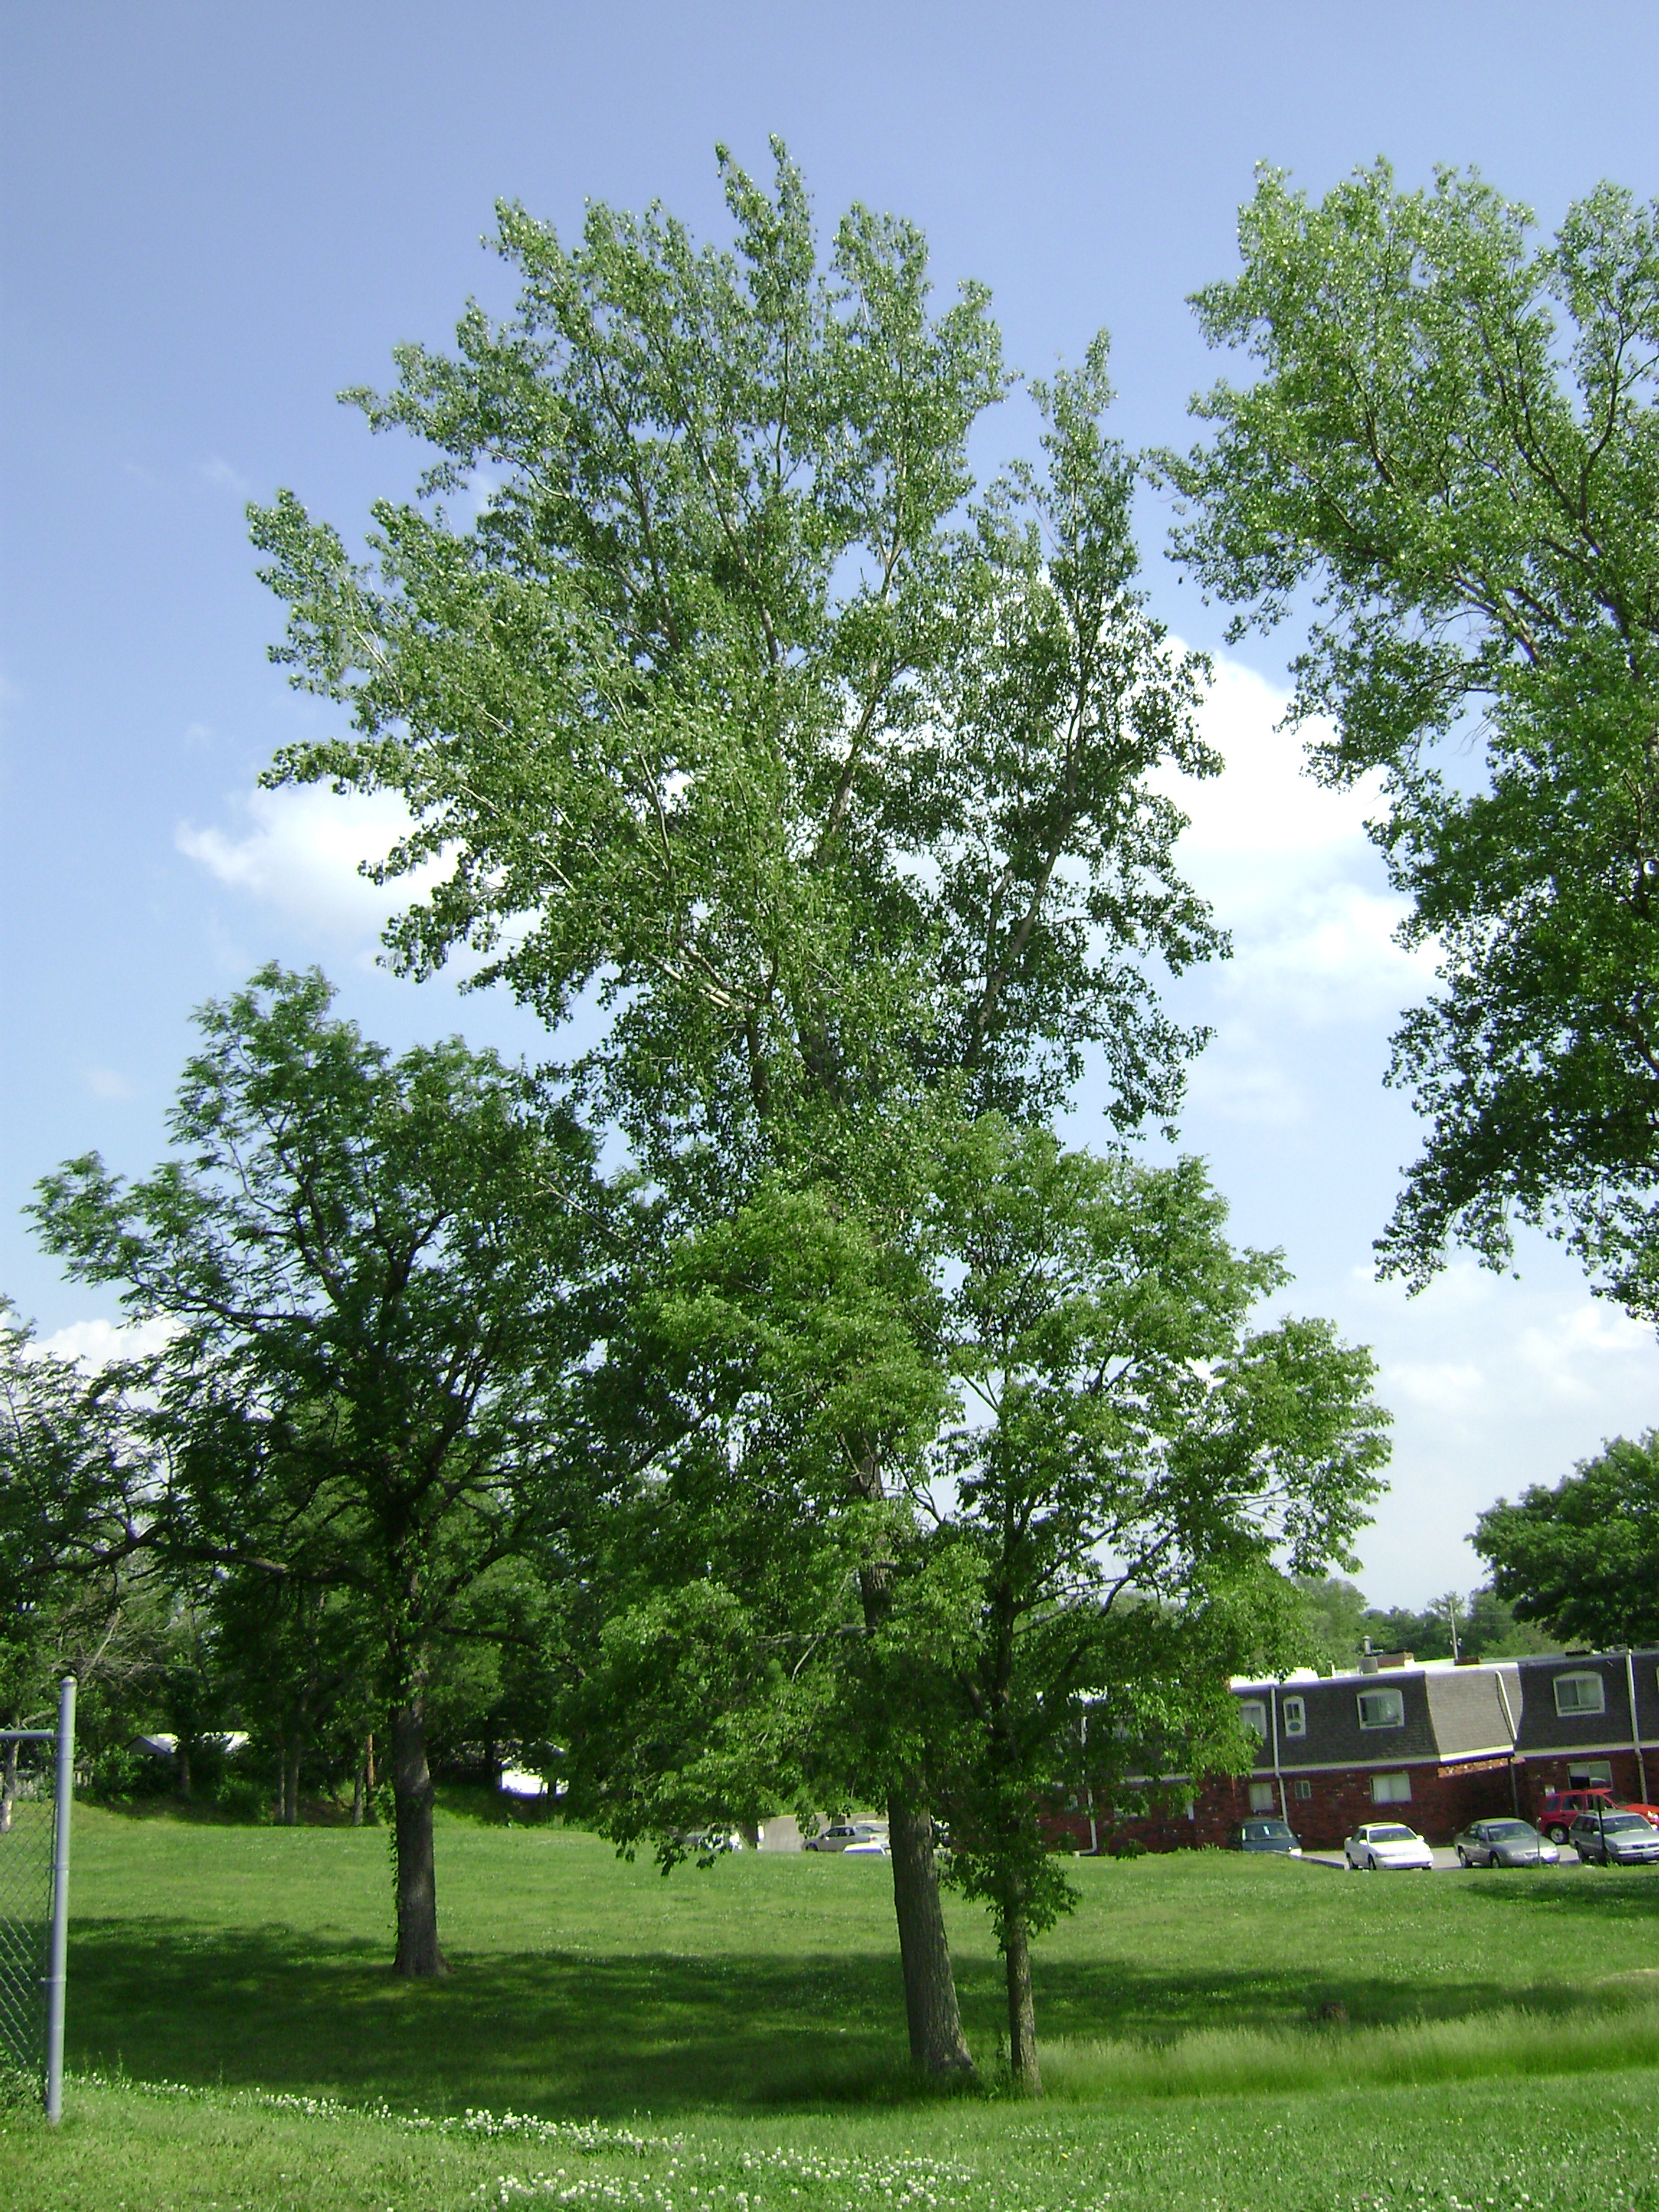 Giant tree photo